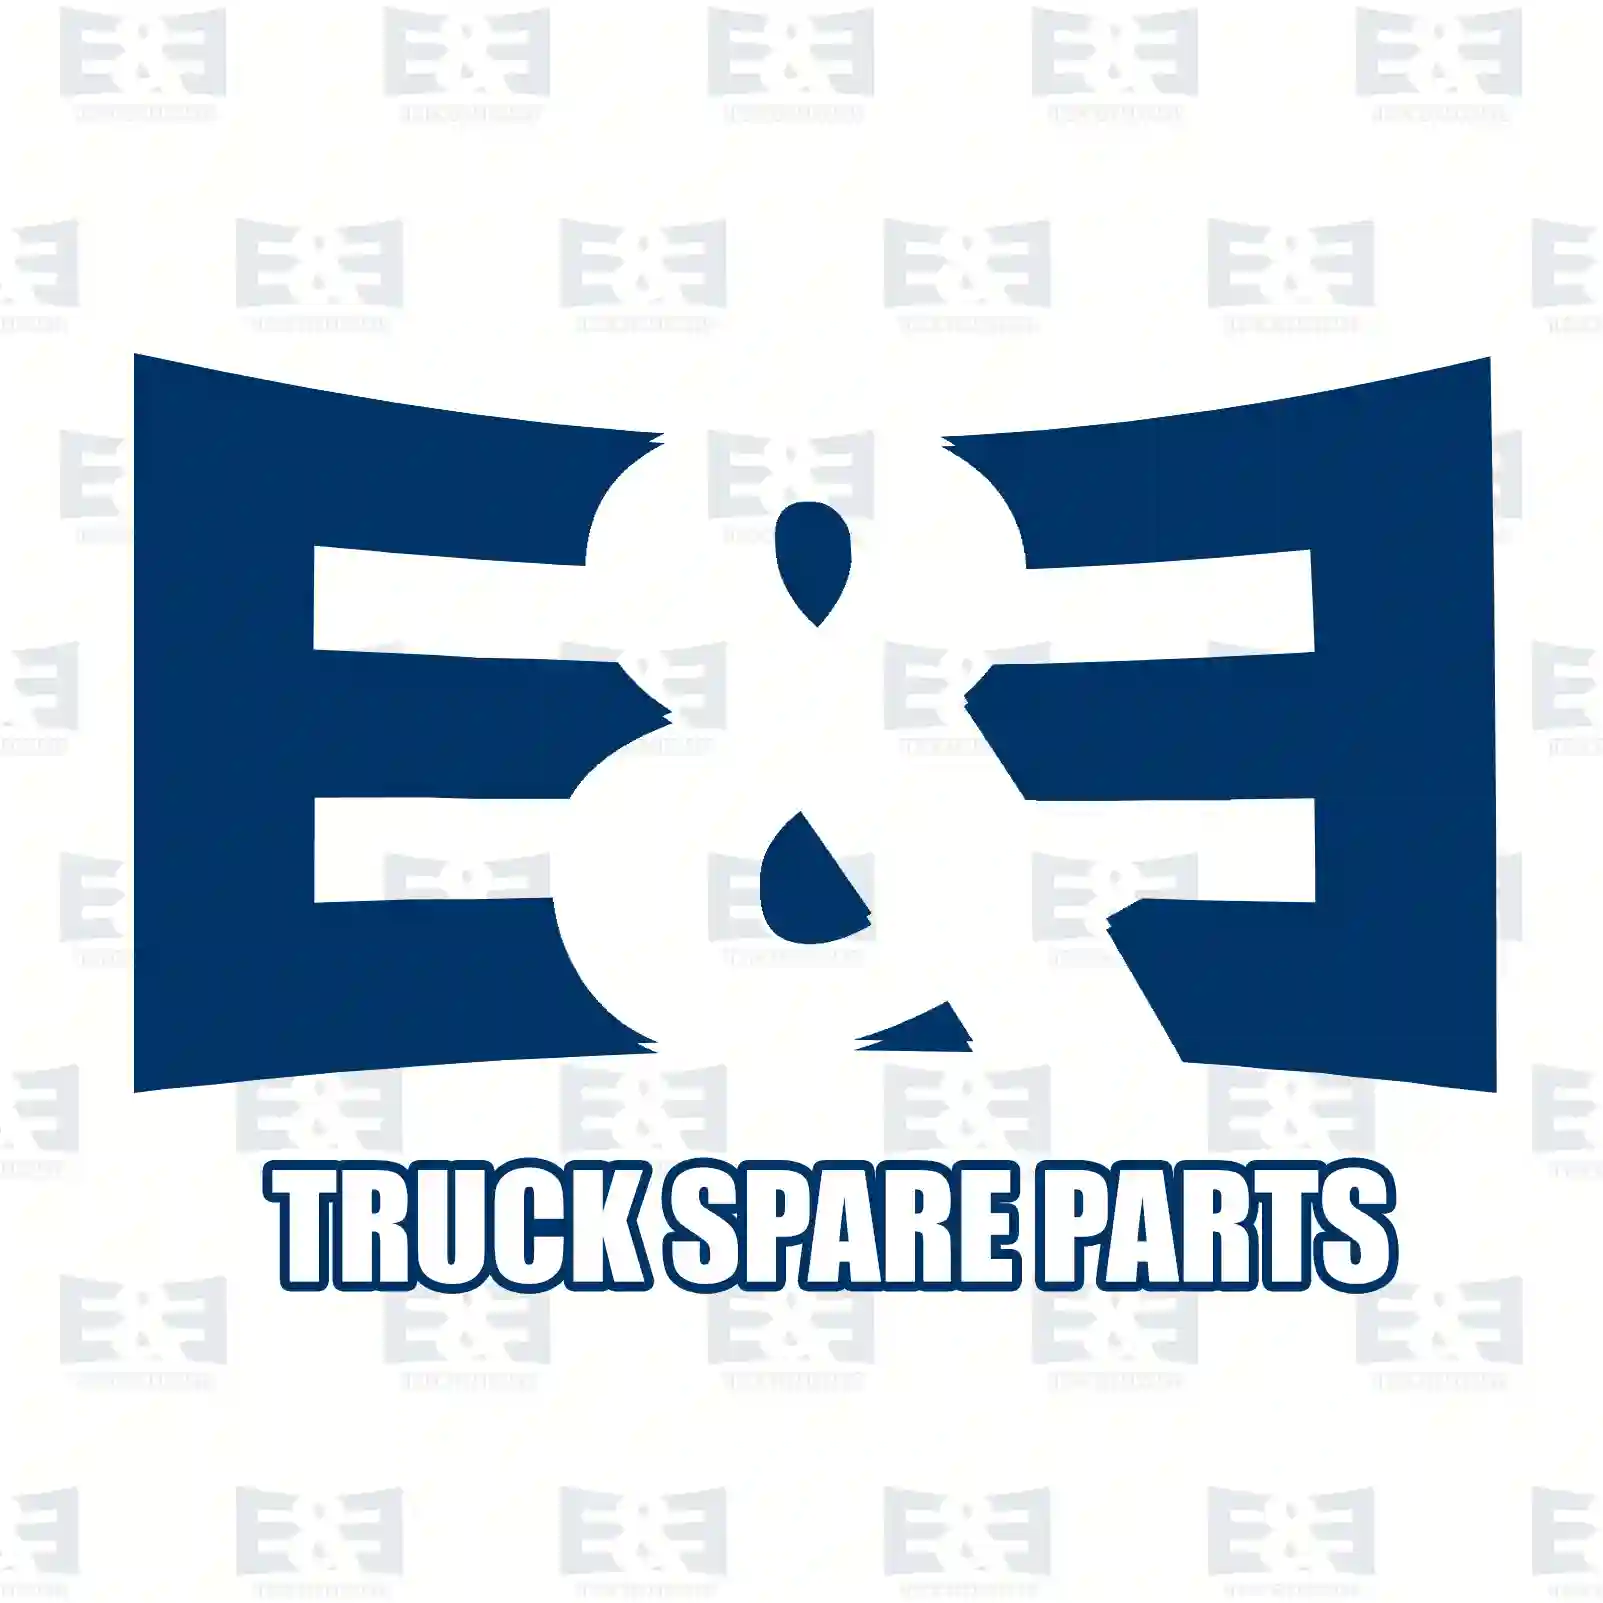 Ball joint, 2E2279292, 81953010061 ||  2E2279292 E&E Truck Spare Parts | Truck Spare Parts, Auotomotive Spare Parts Ball joint, 2E2279292, 81953010061 ||  2E2279292 E&E Truck Spare Parts | Truck Spare Parts, Auotomotive Spare Parts